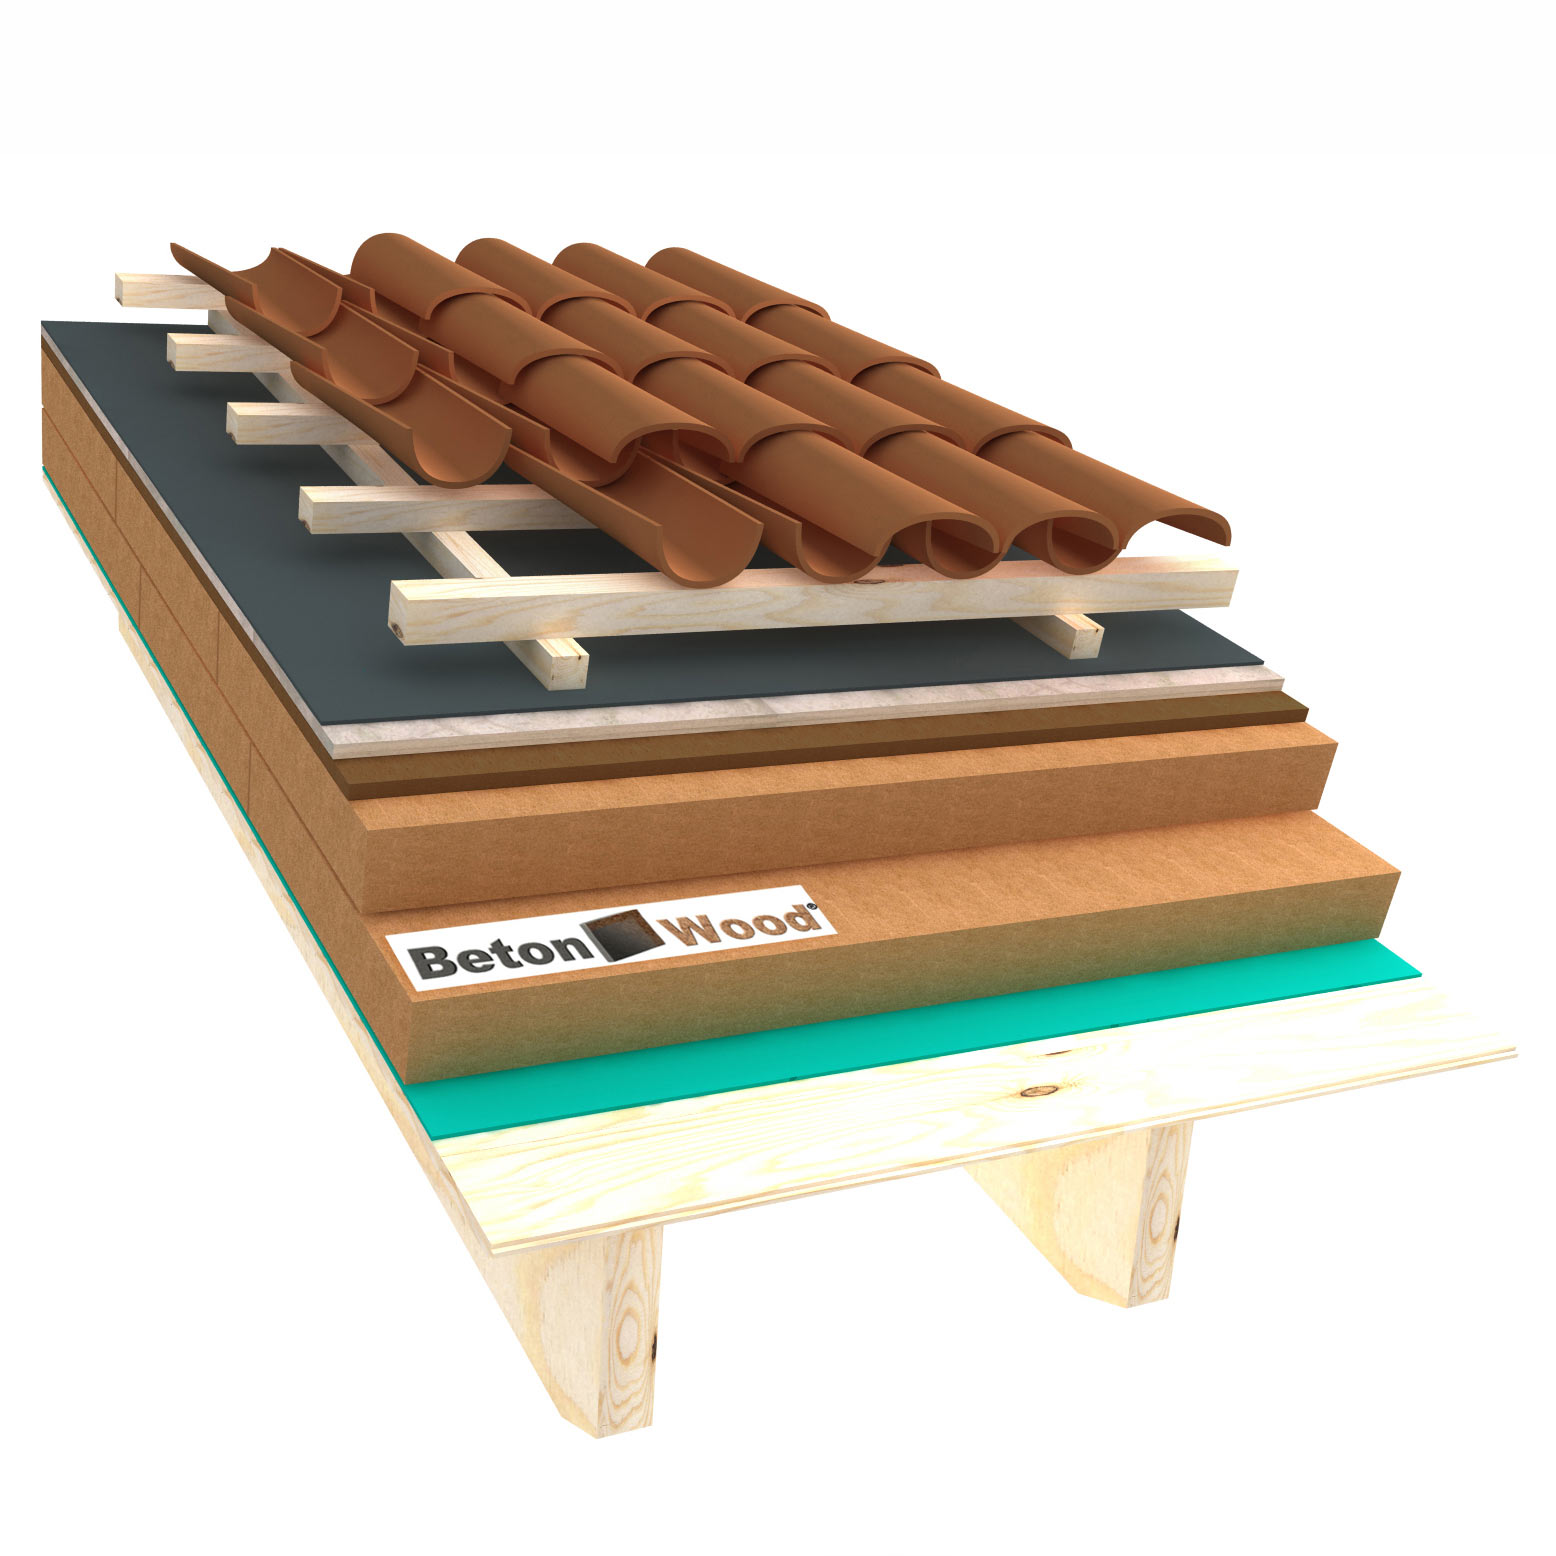 Fiber wood, Bitumfiber, BetonWood wood roof